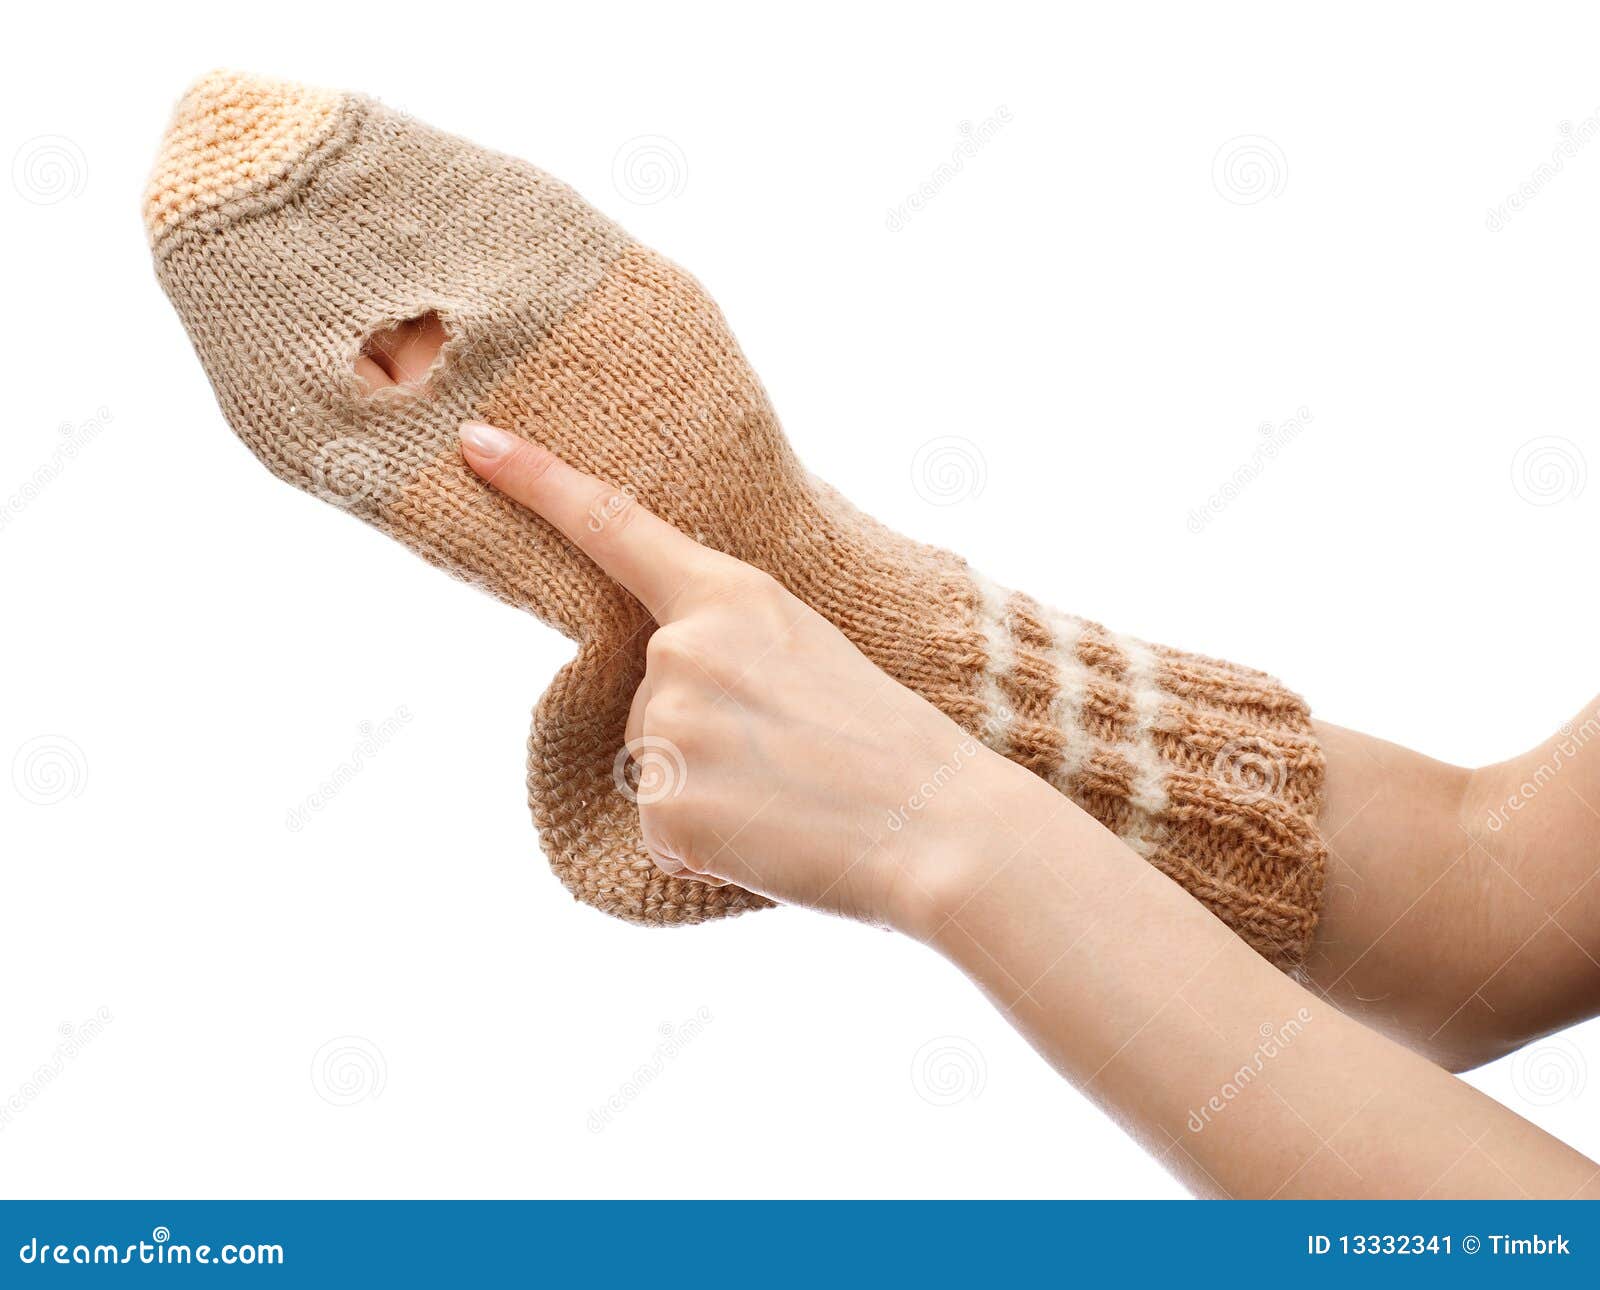 Torn sock stock image. Image of knitting, handmade, white - 13332341